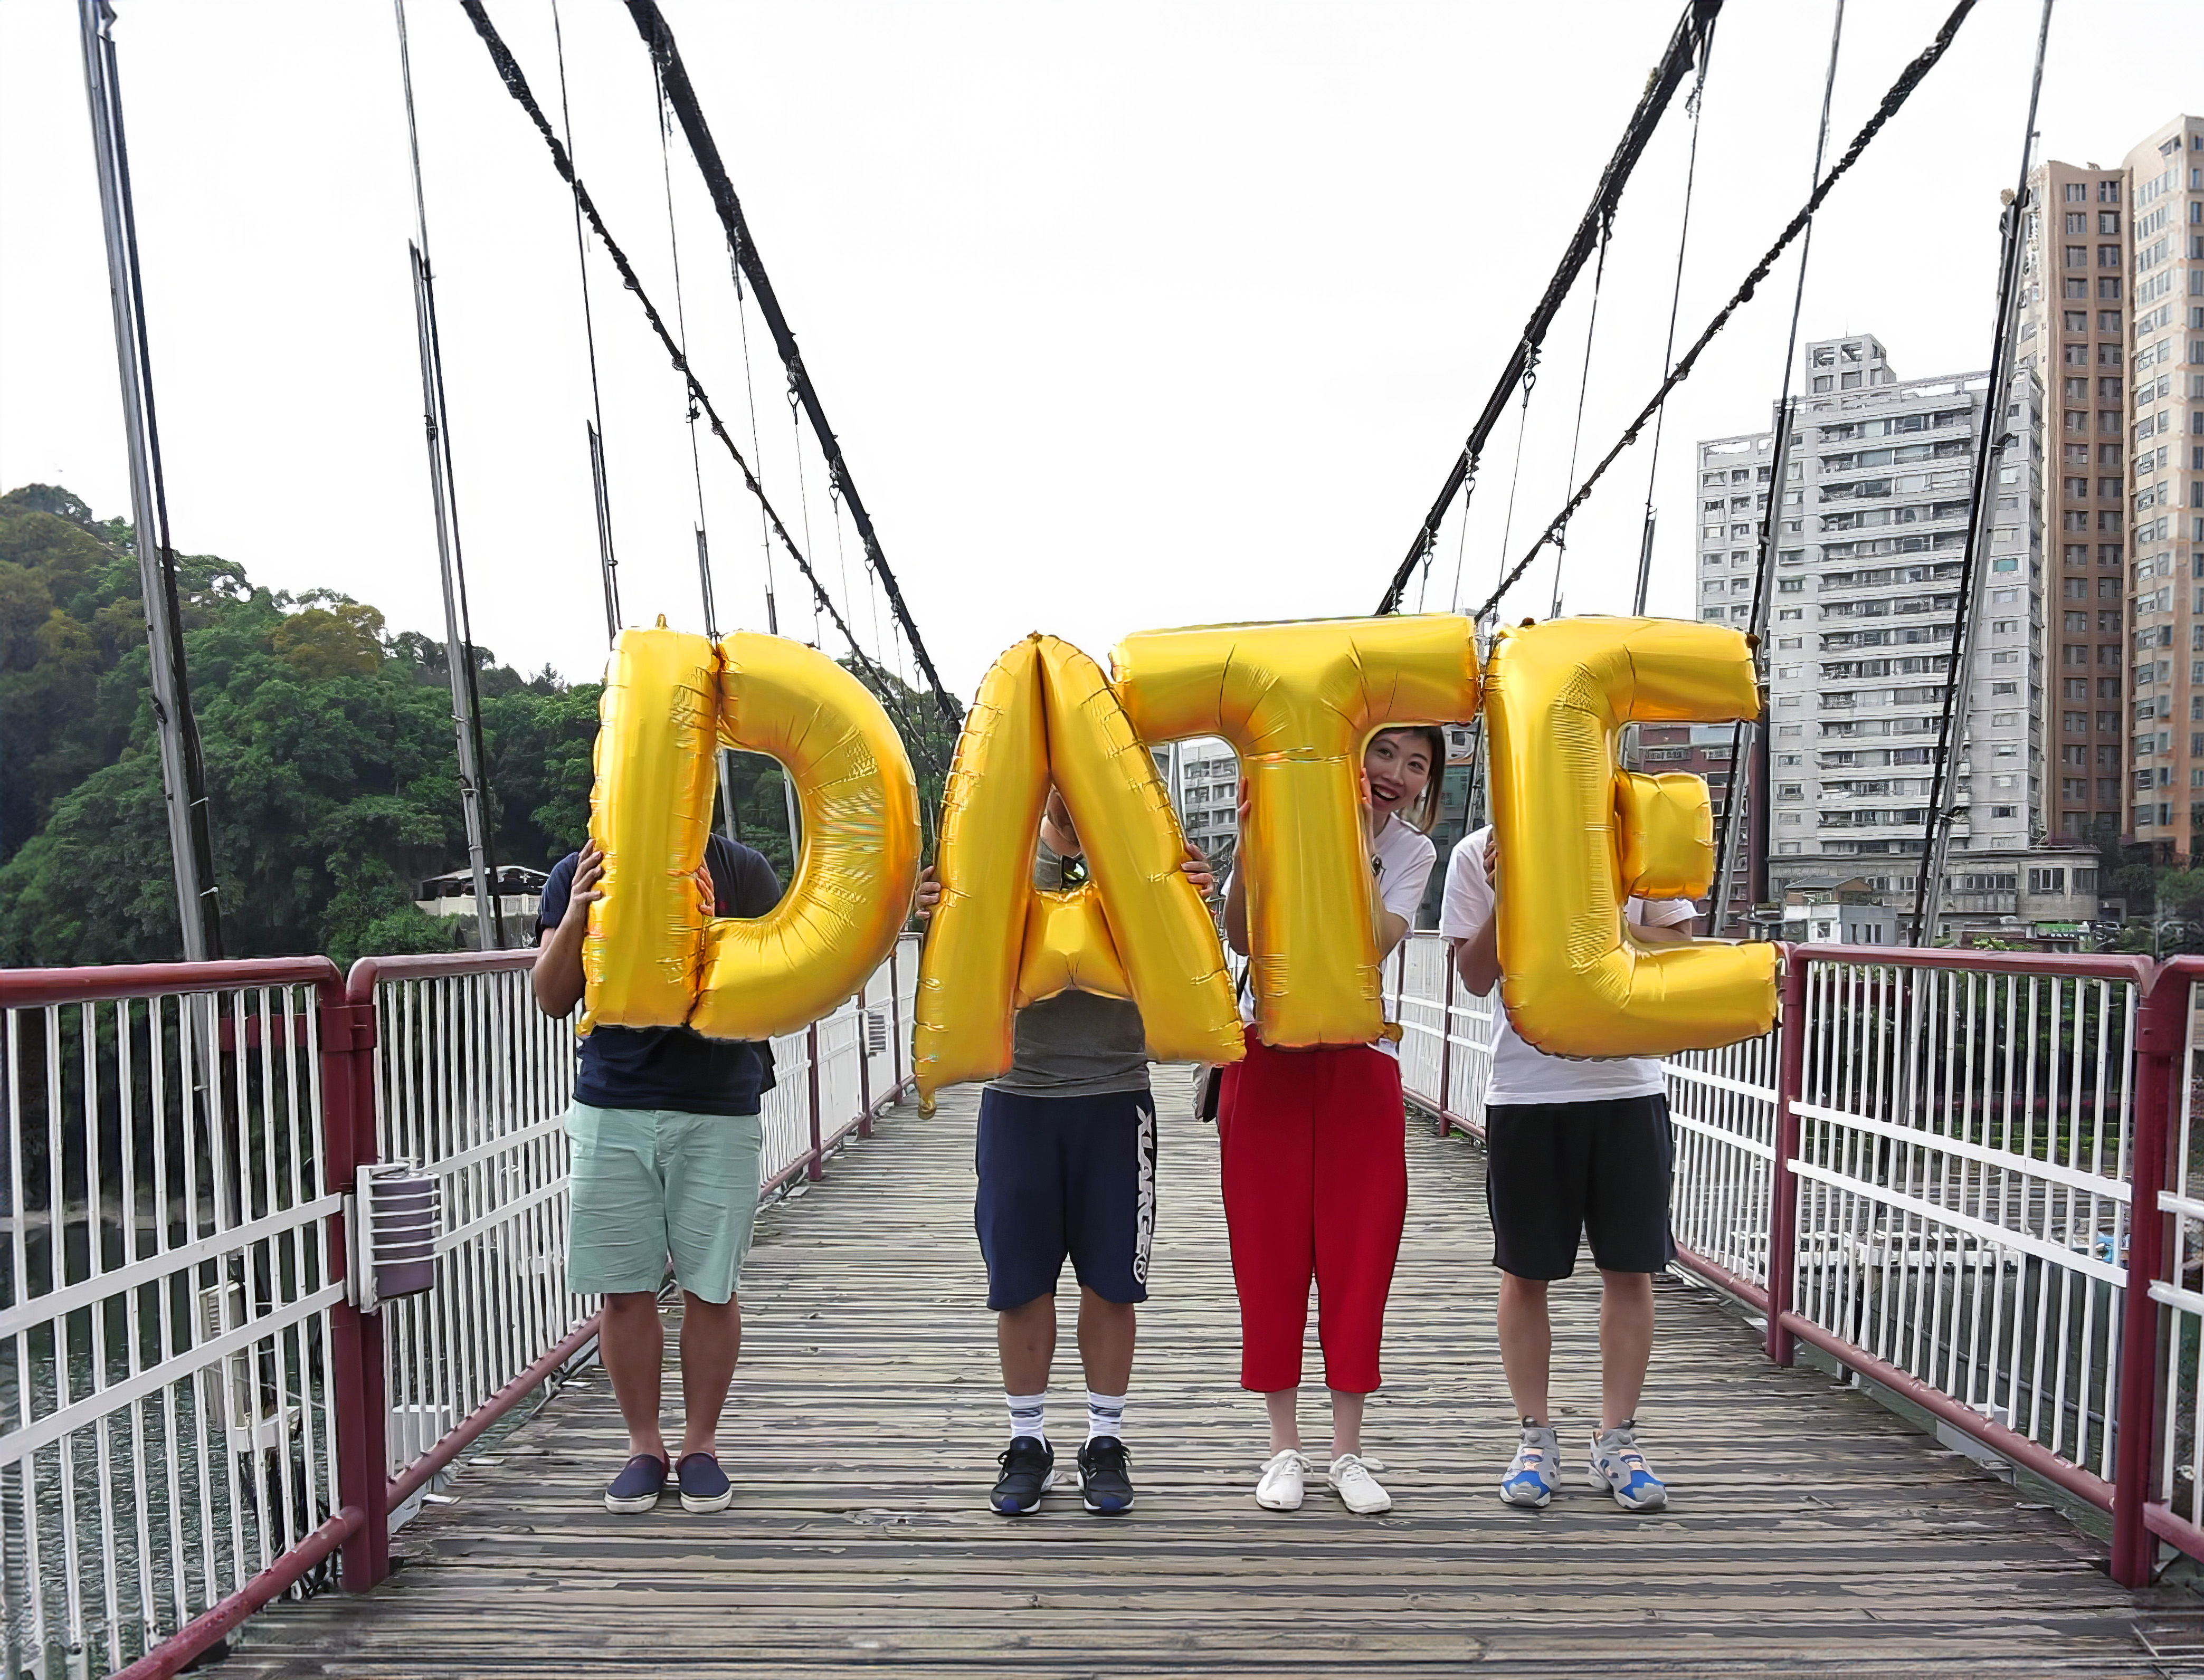 Taiwan, Taipei, Bitan Suspension Bridge - Date, Silence Was Golden, Golden balloons